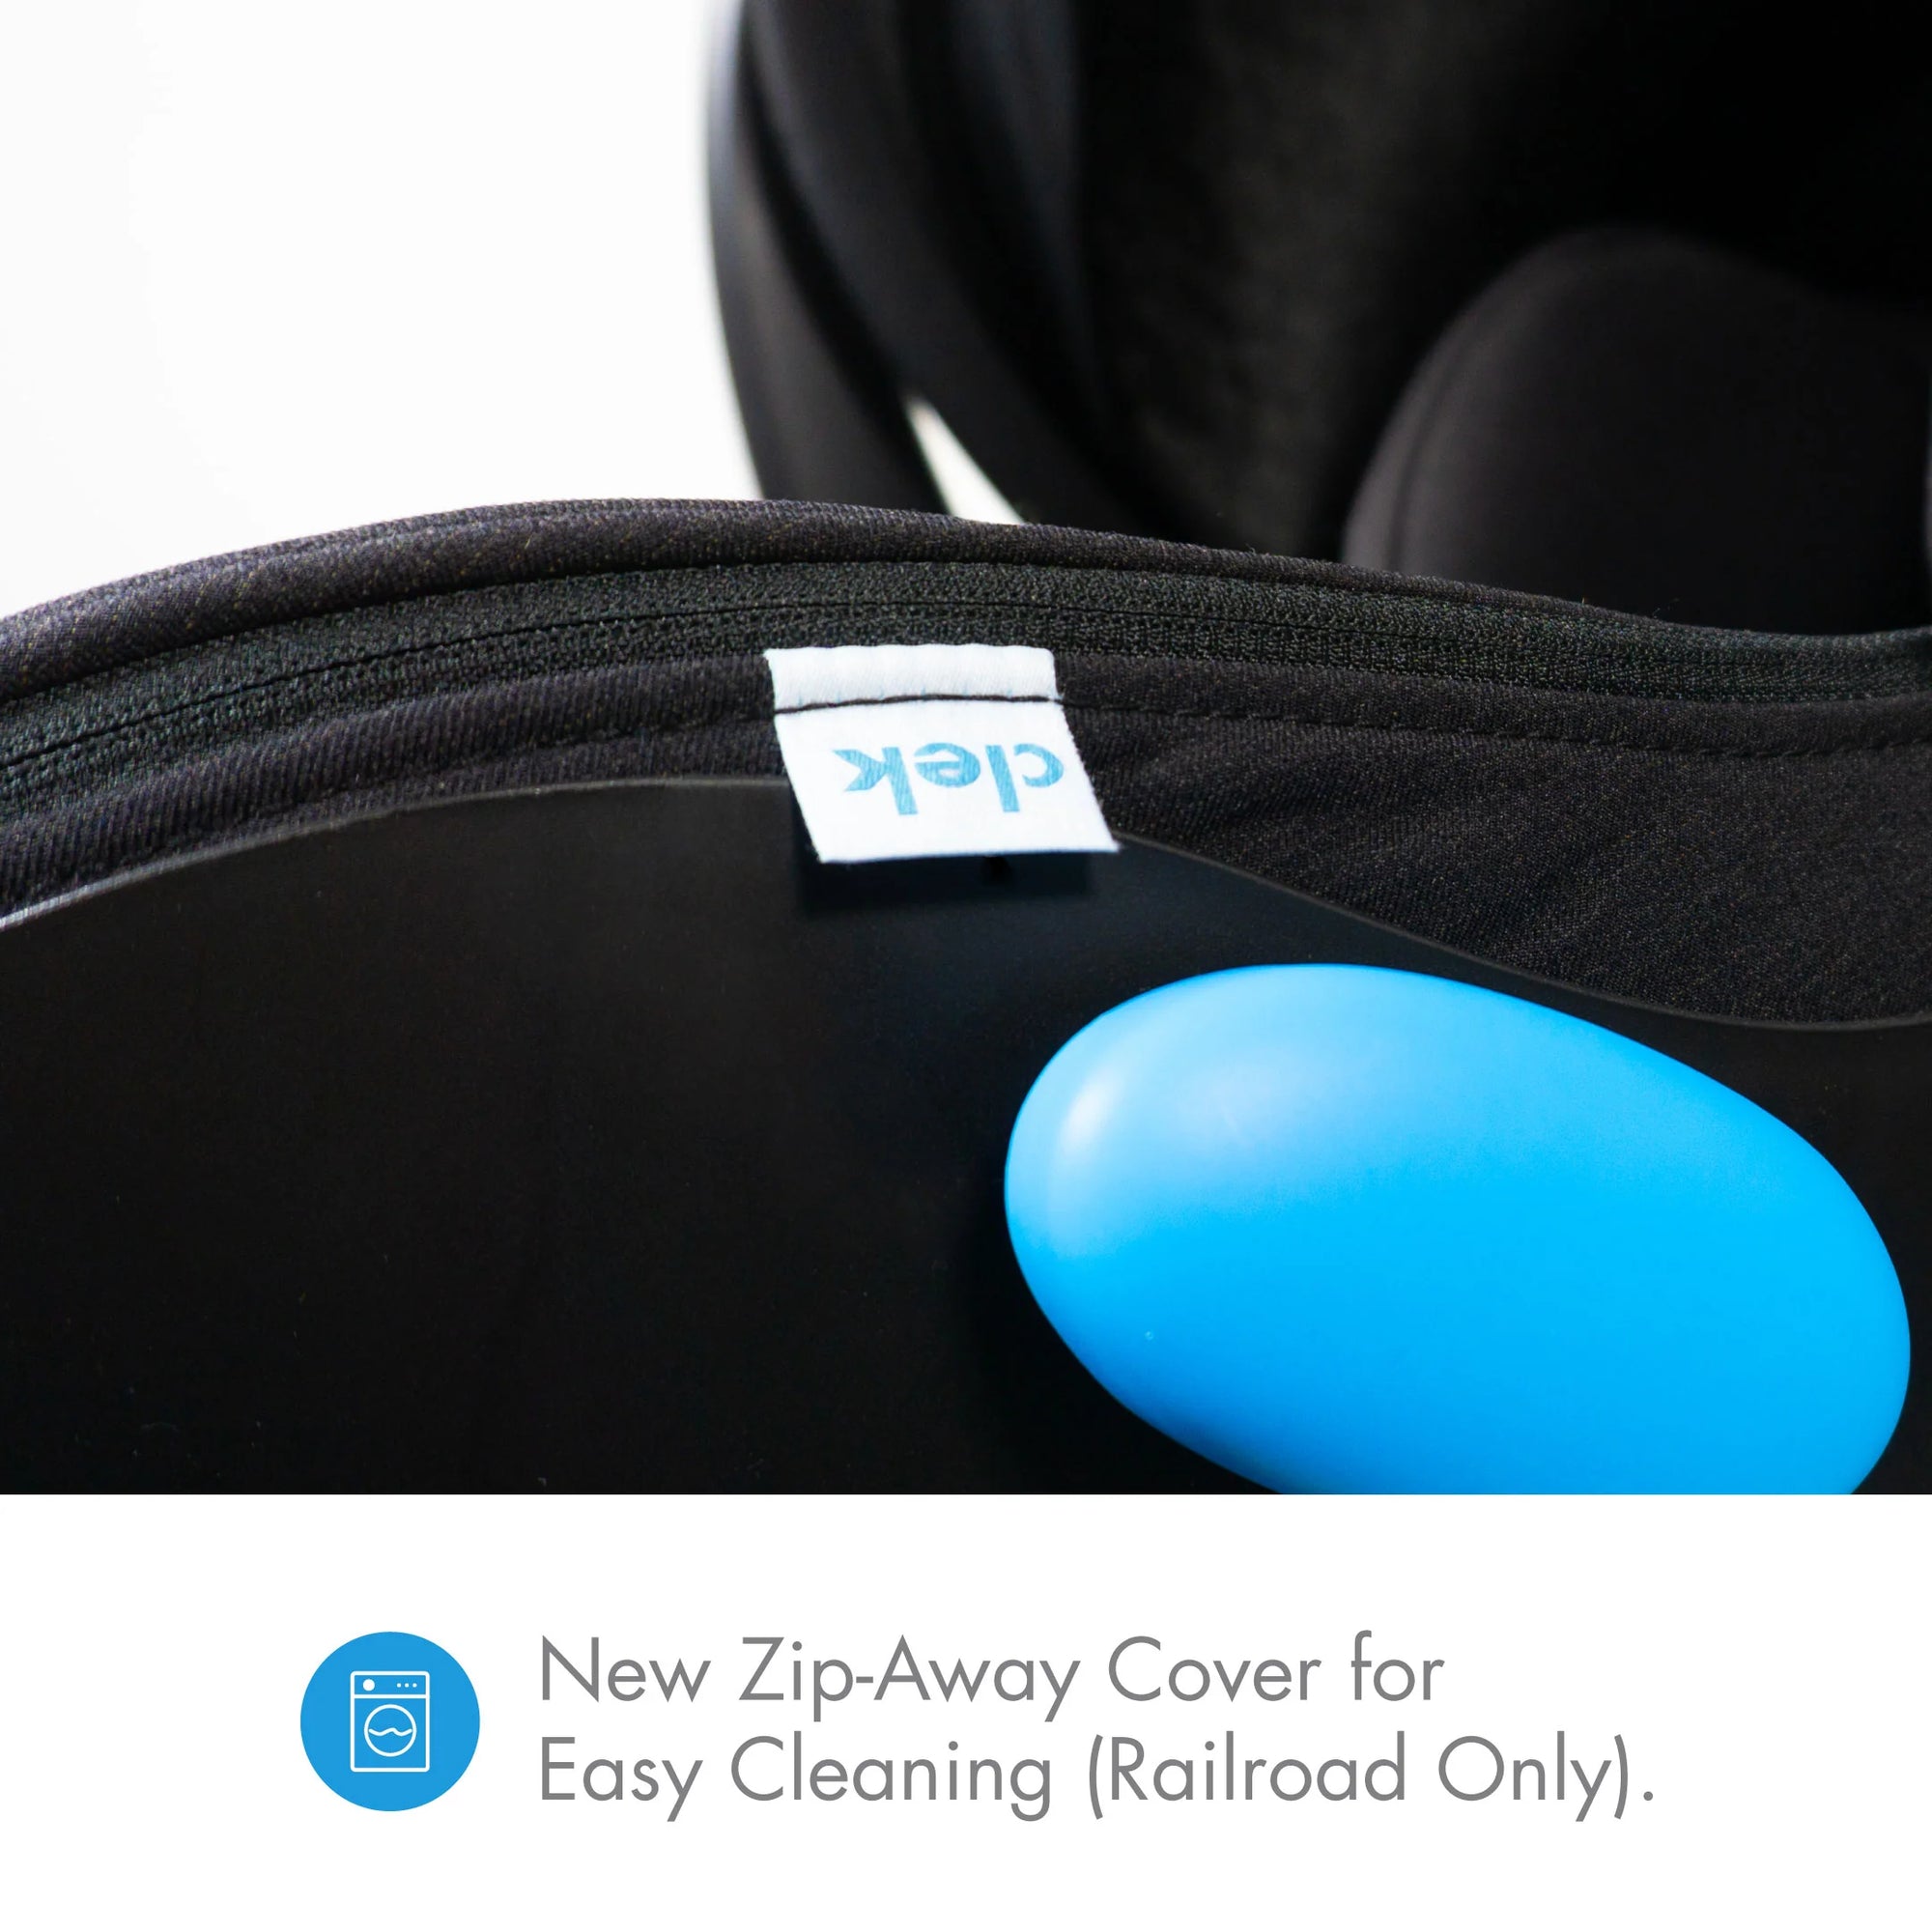 Clek Liing Infant Car Seat - Railroad Ziip Flame Retardant Free (Jersey Knit)